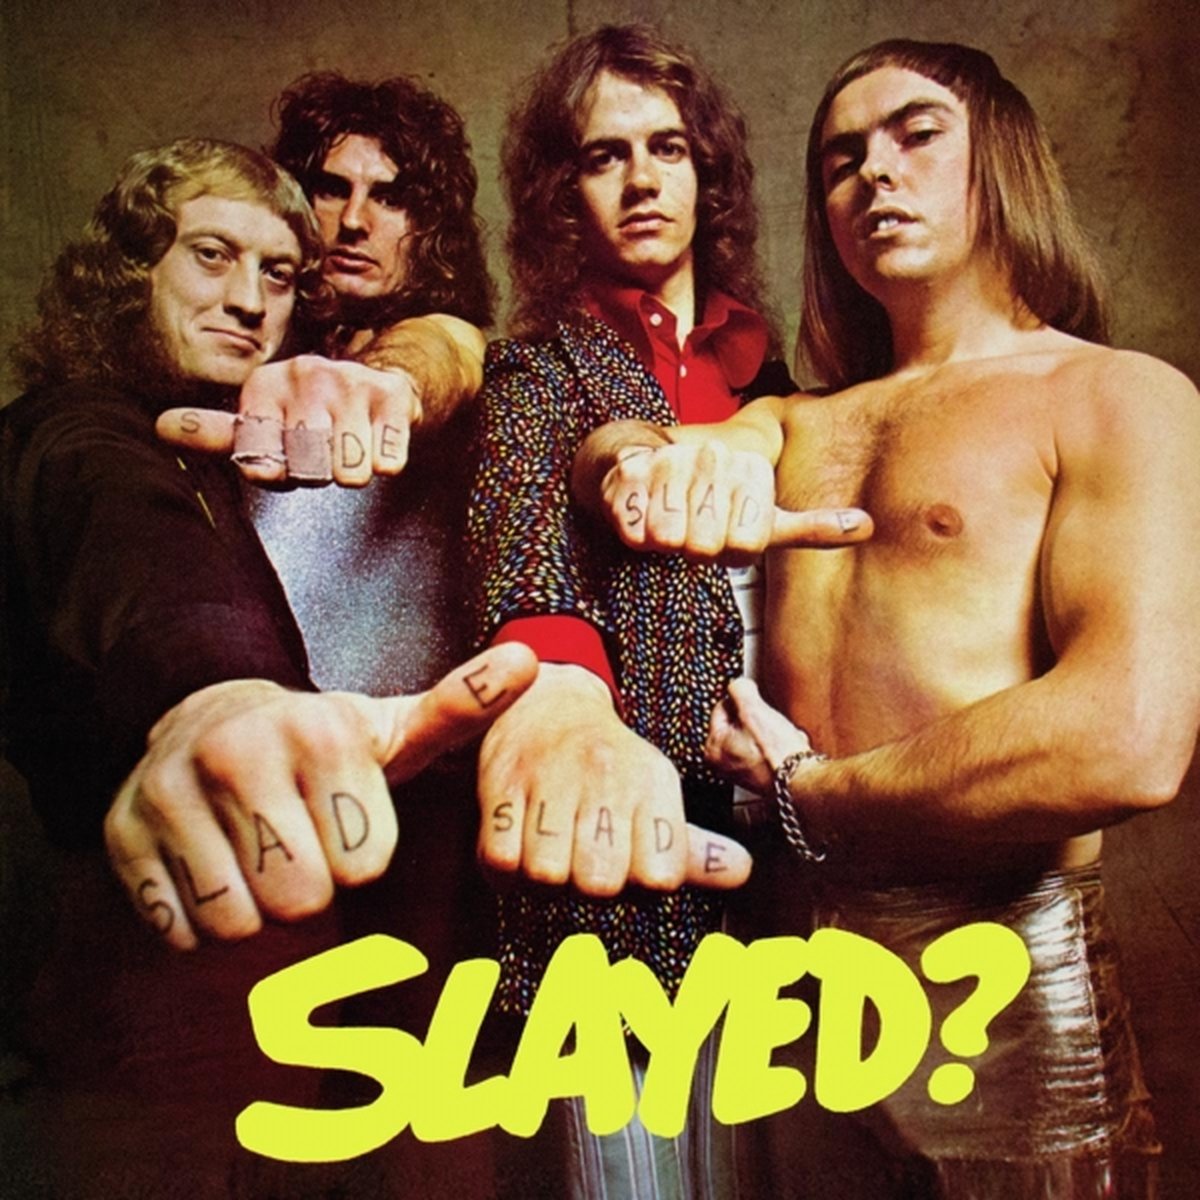 Slade - Slayed? - Slade